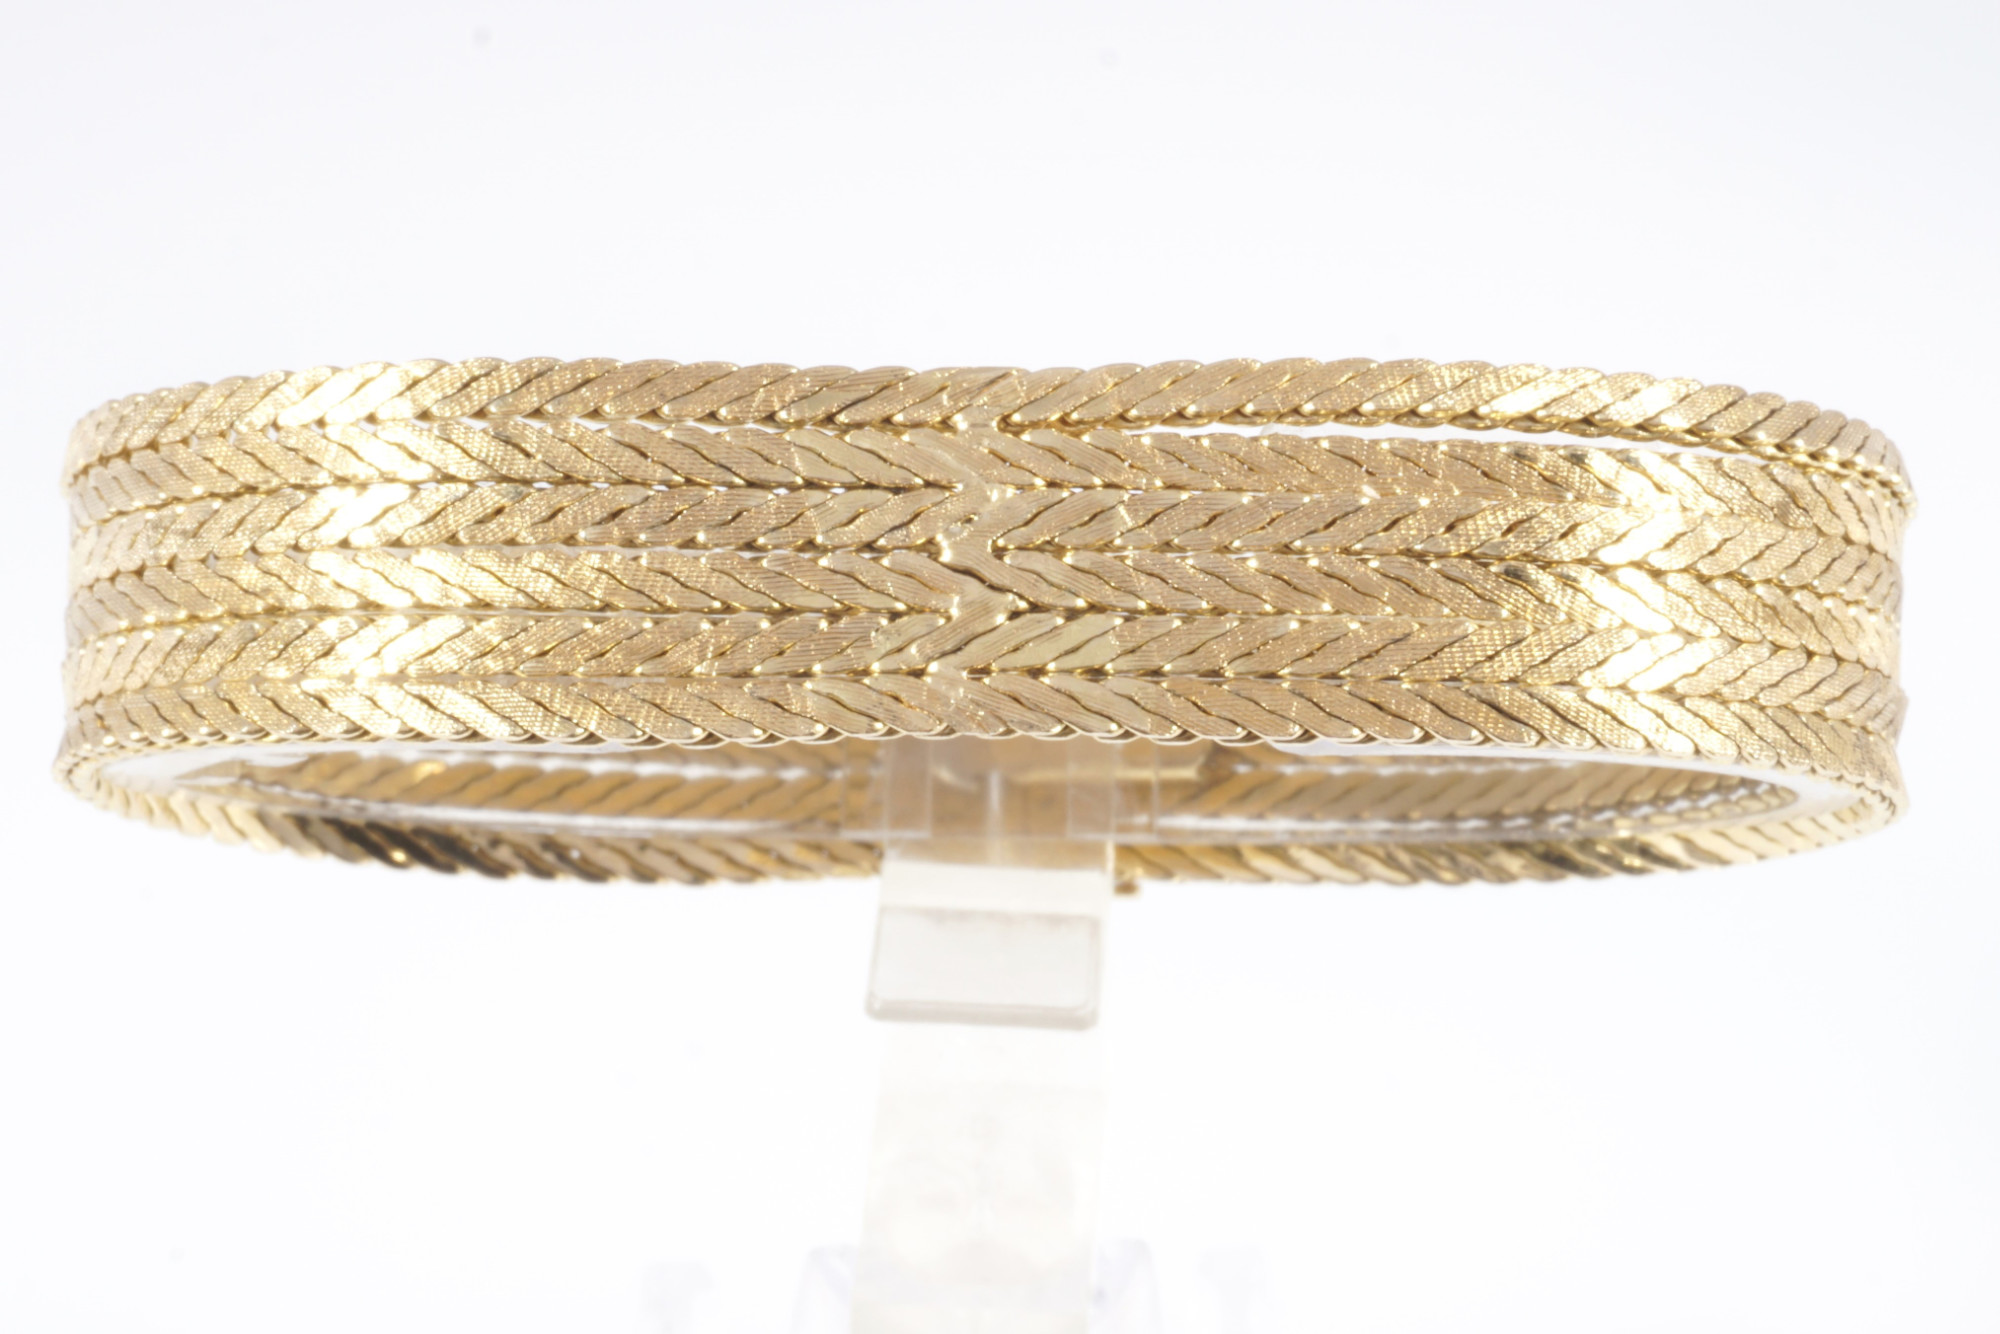 750 six-rowed gold bracelet, 18K Gold sechsreihige Armband, - Image 2 of 5